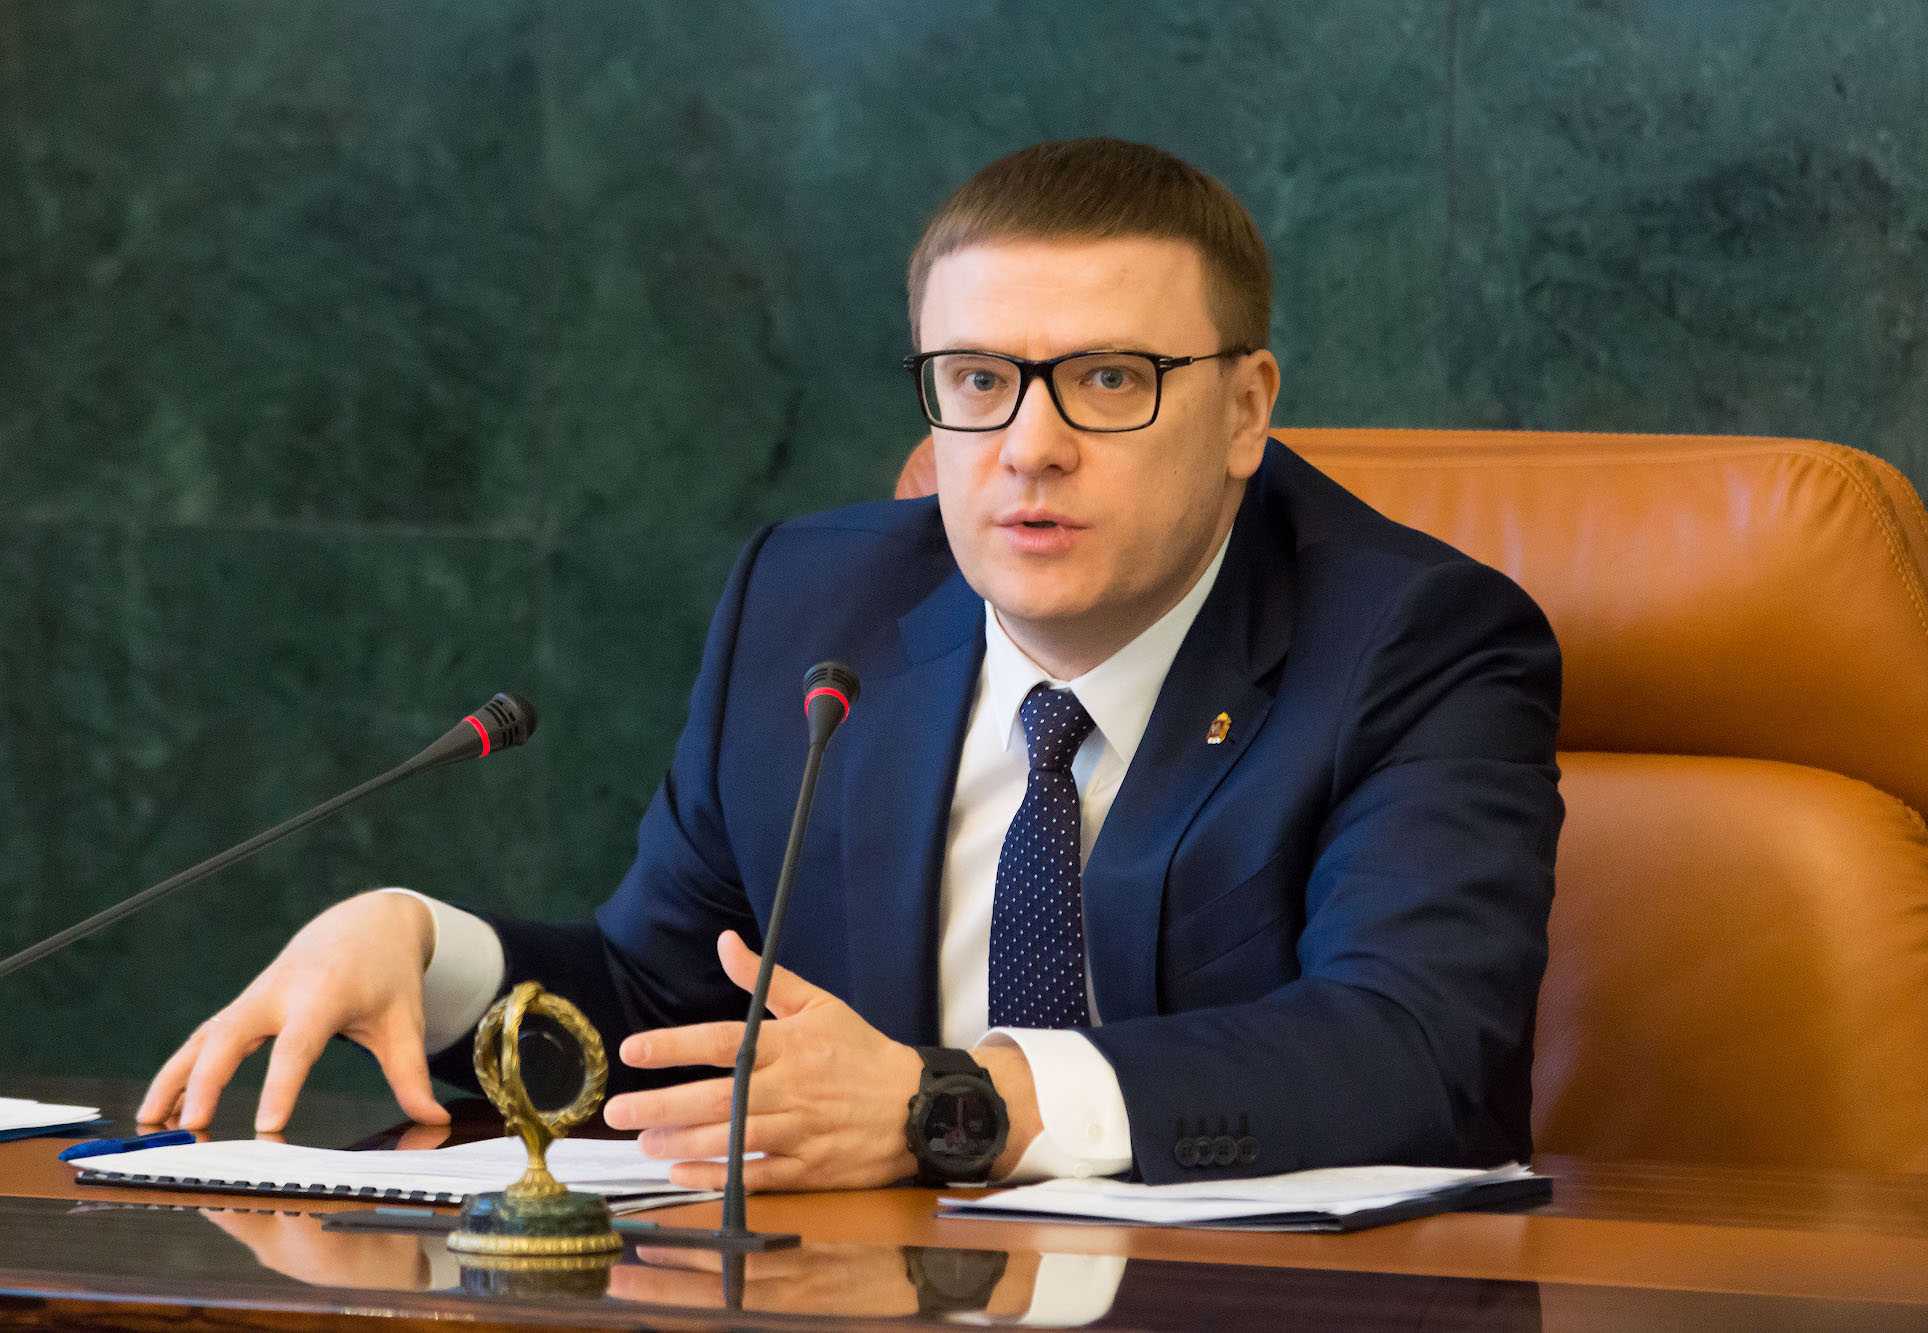 Алексей Текслер вошел в ТОП-20 популярных  губернаторов-блогеров